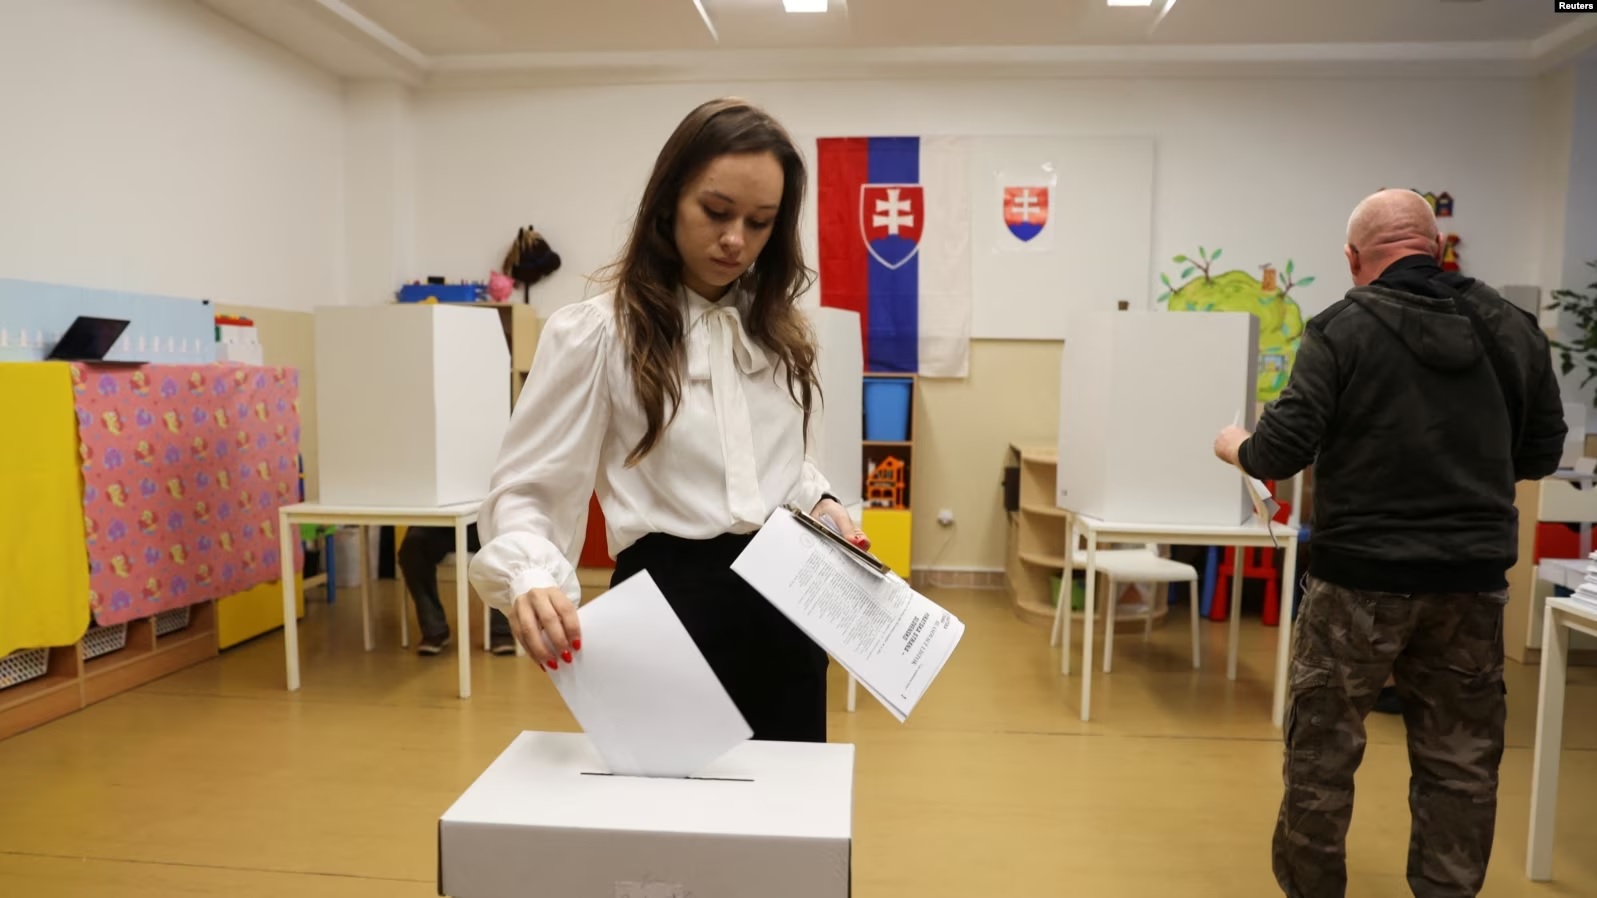 Sllovakët zgjedhin sot mes kandidatit pro rus Fico dhe liberalëve pro perëndimorë